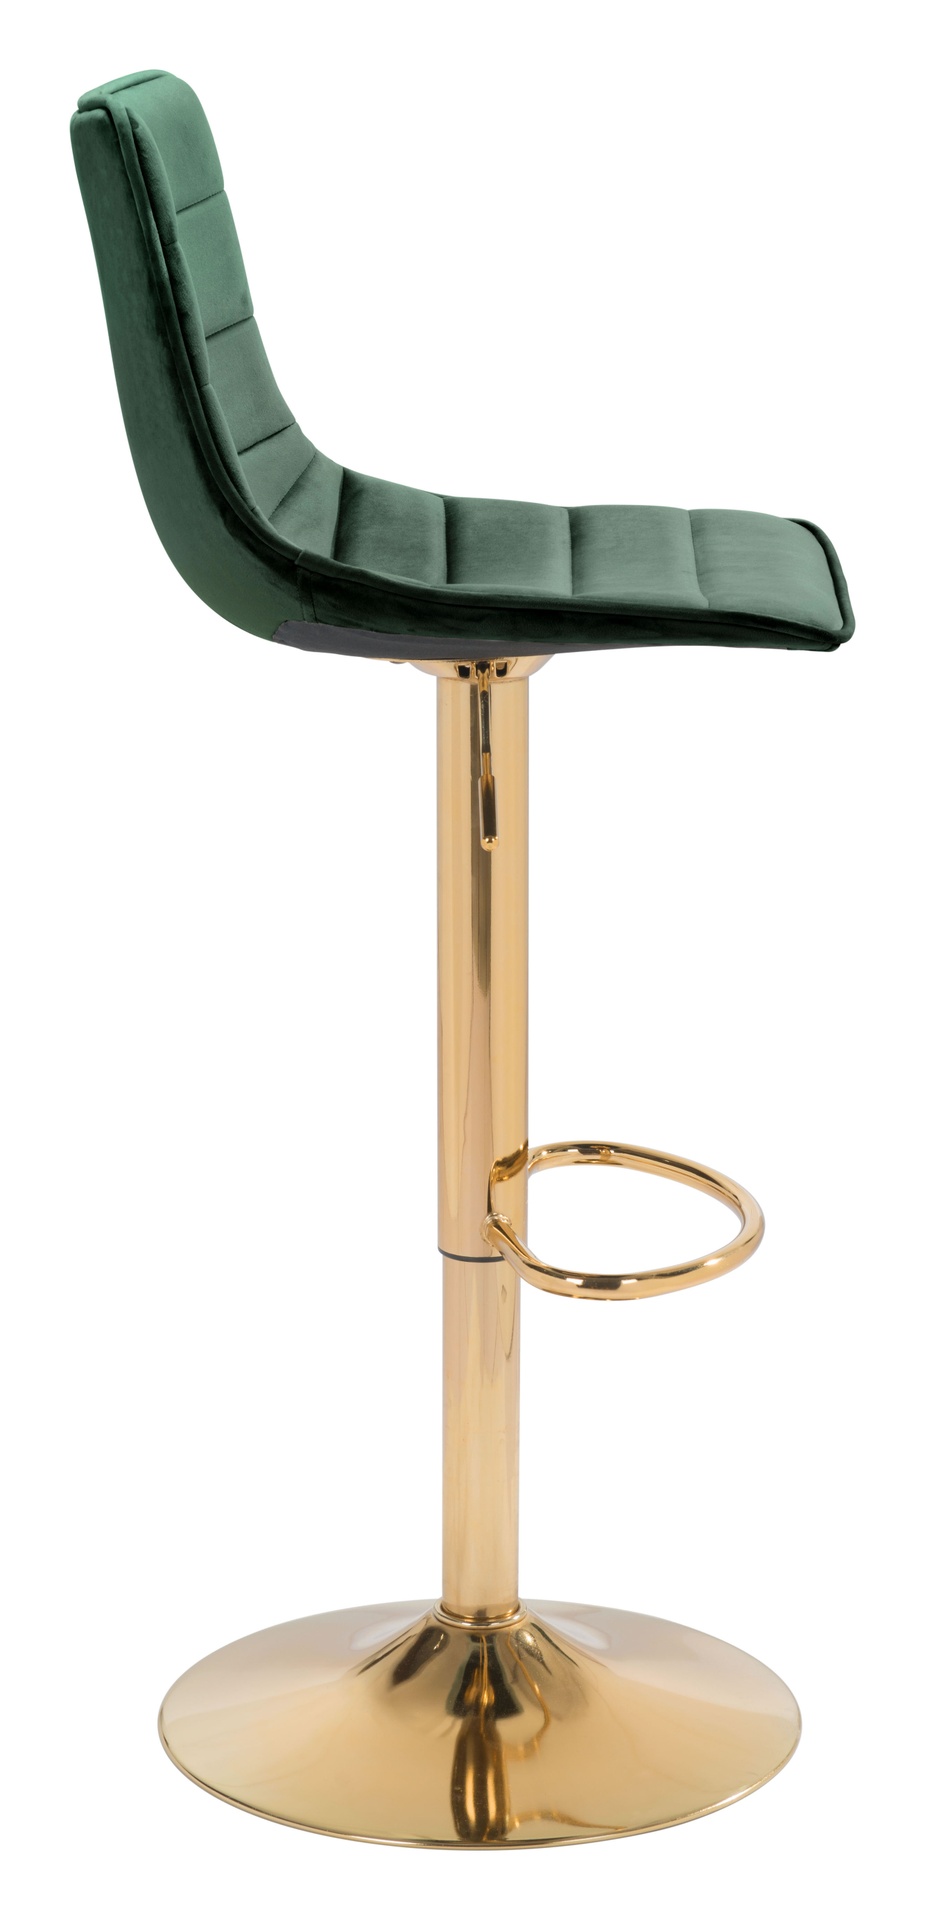 Amir silla bar verde oscuro y dorado // MS